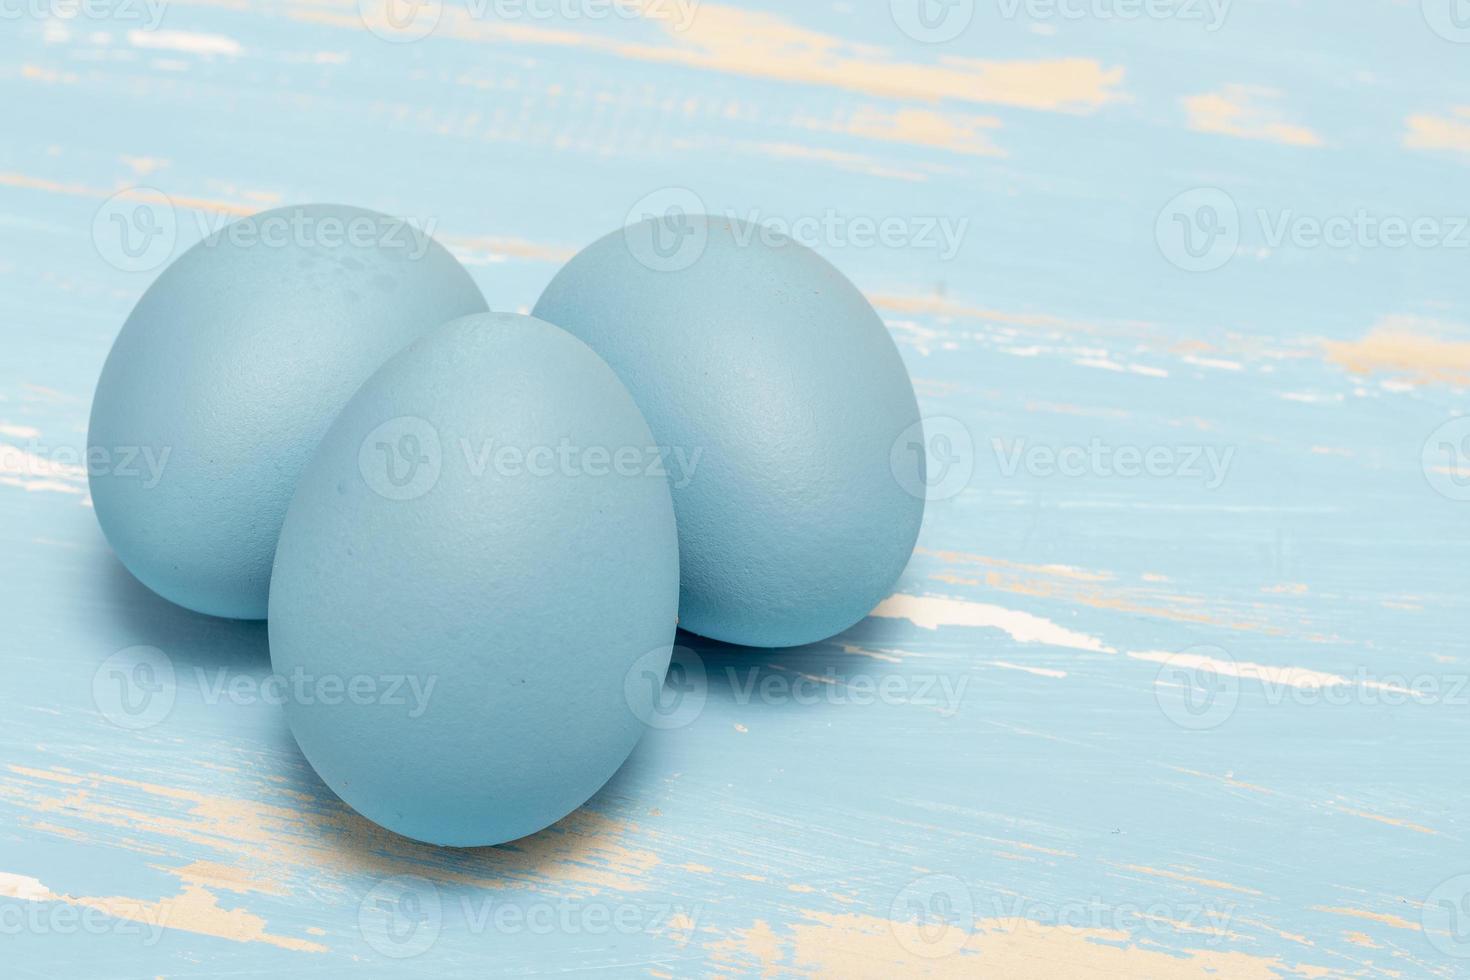 ägg symboliserar de påsk Semester i blå Färg på en bakgrund av åldrig trä foto